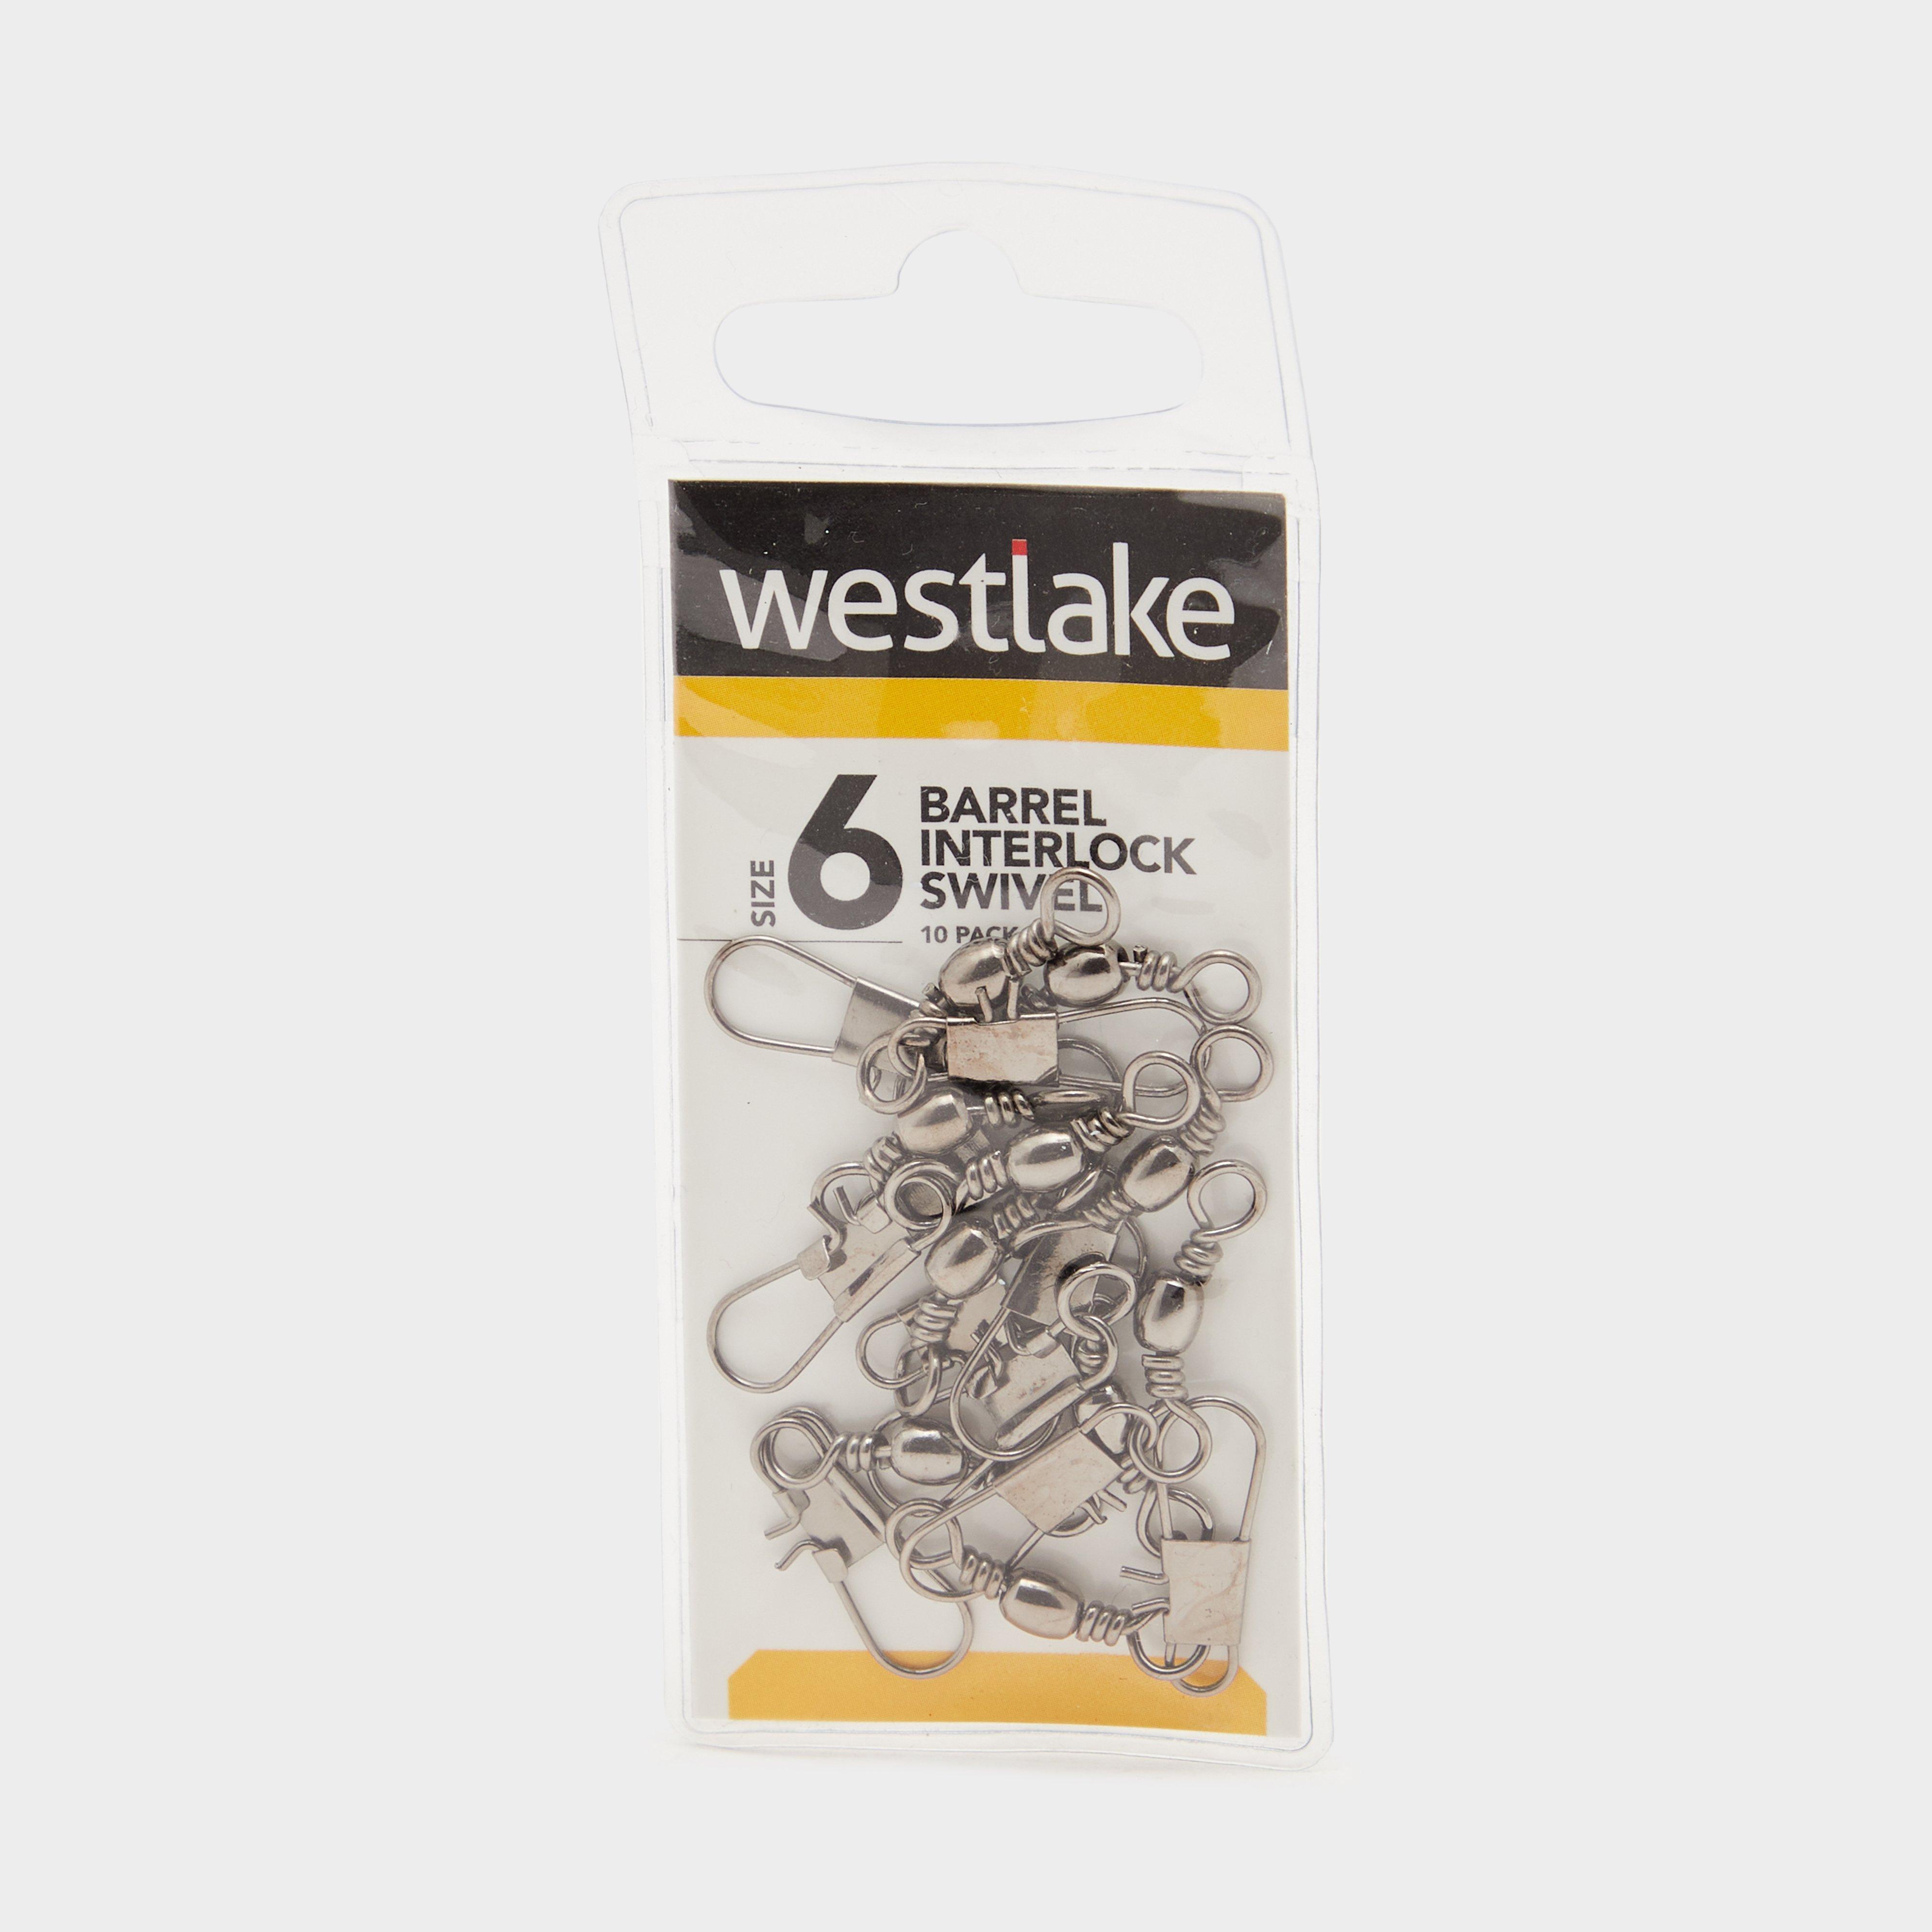 Westlake Barrel Interlock Swivel Size 6 10 Pack - Silver/6  Silver/6